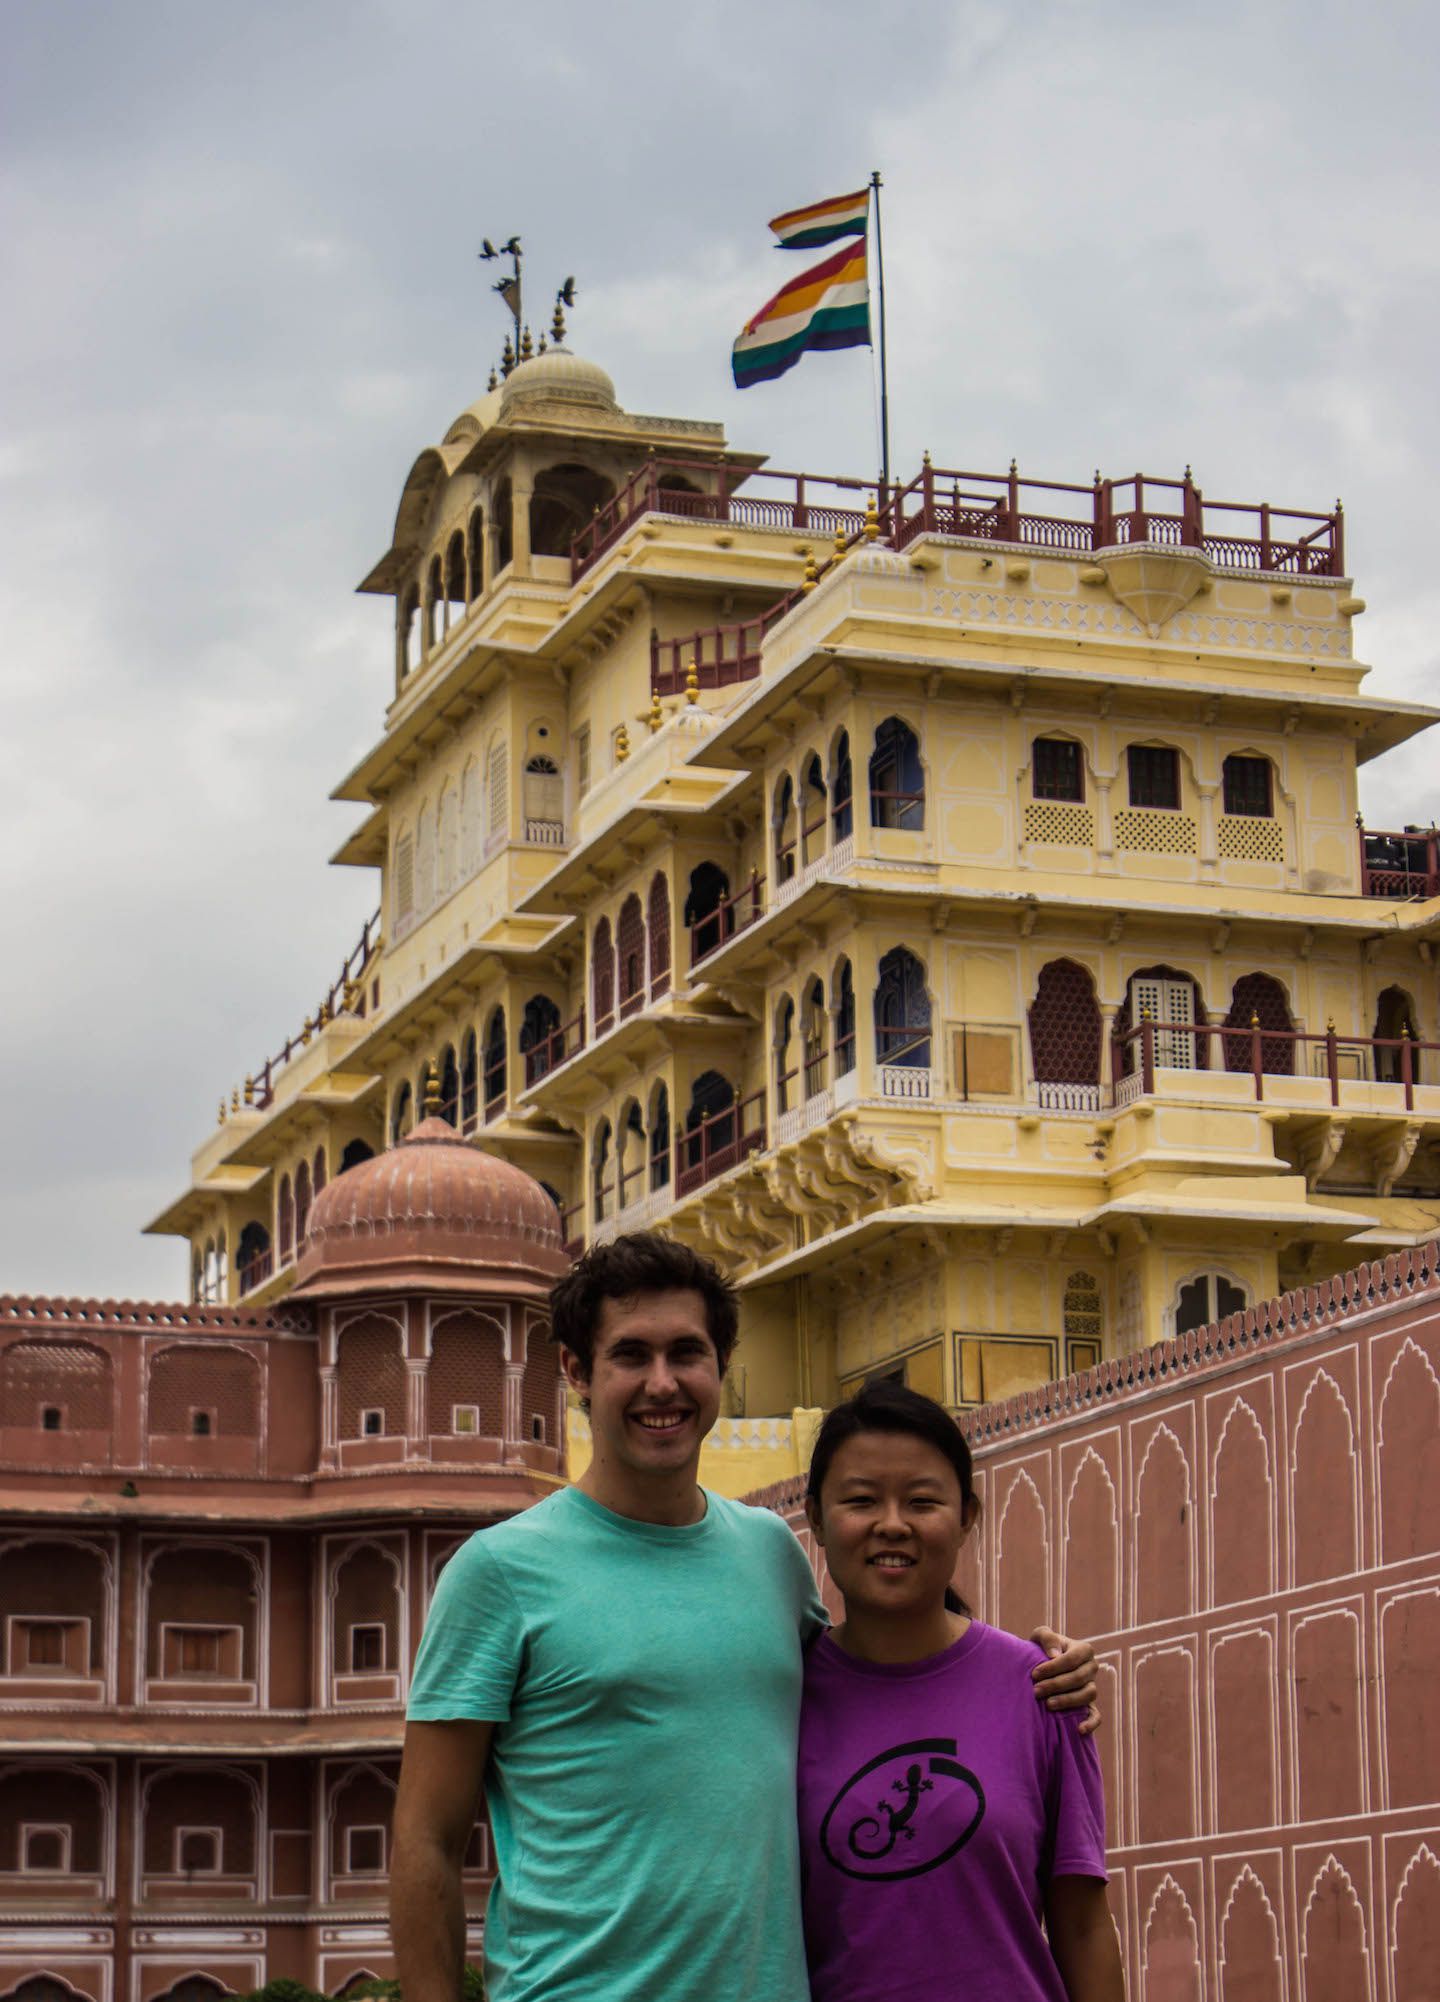 Julie and Carlos at the Jaipur City Palace, India